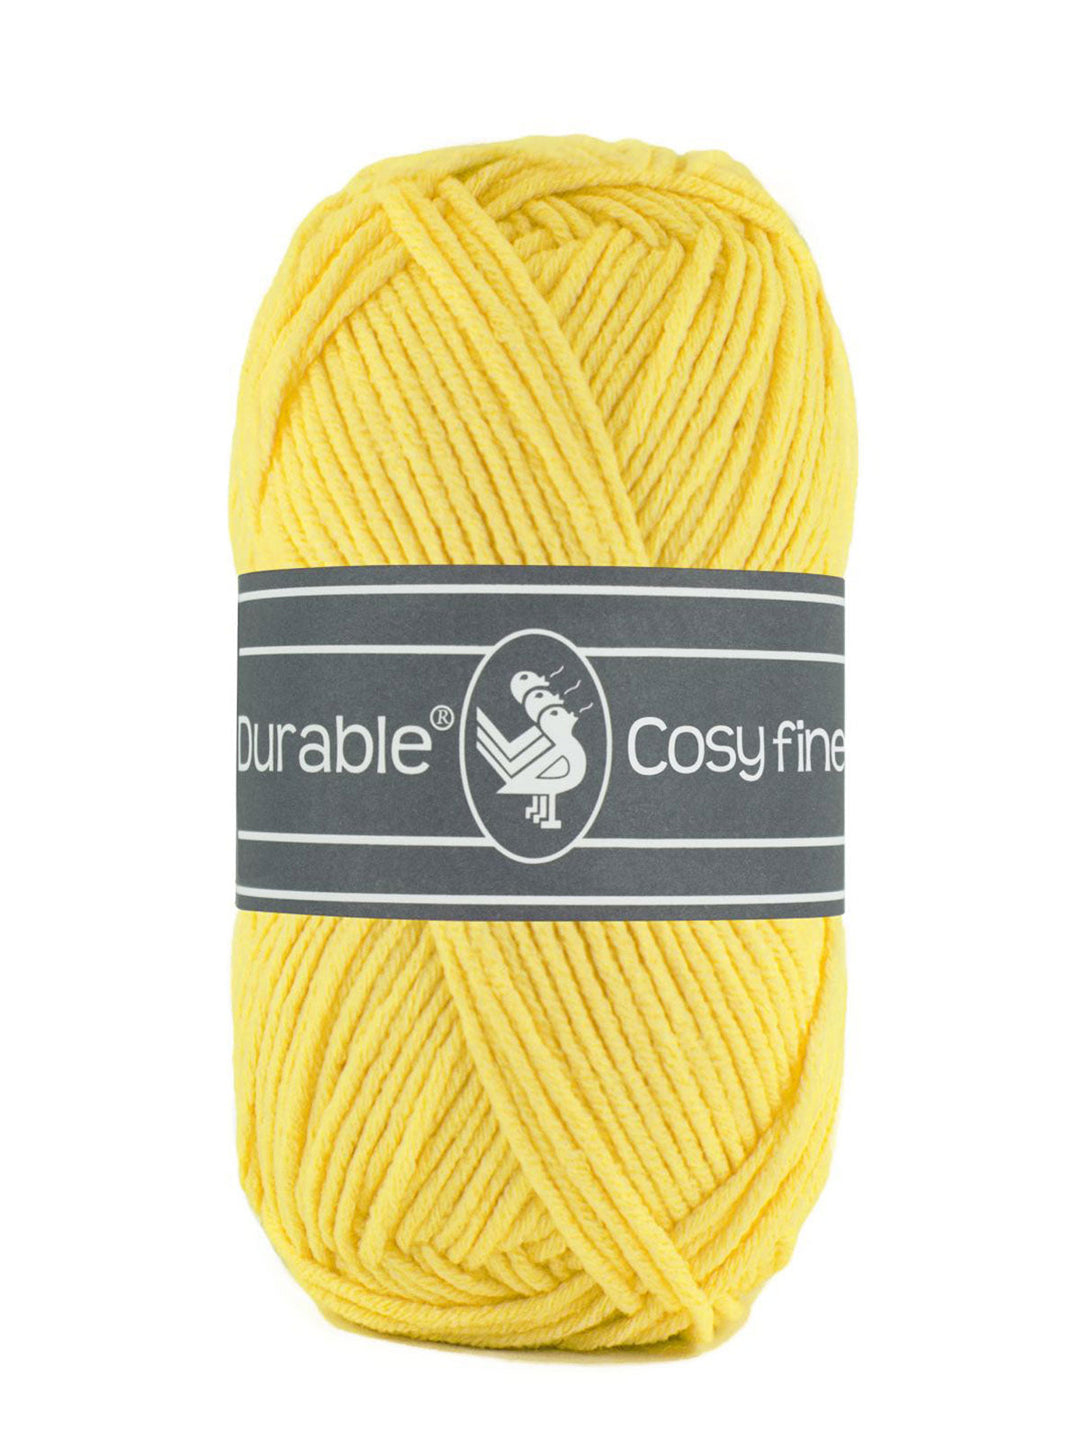 Durable Cosy Fine 2180 Bright yellow